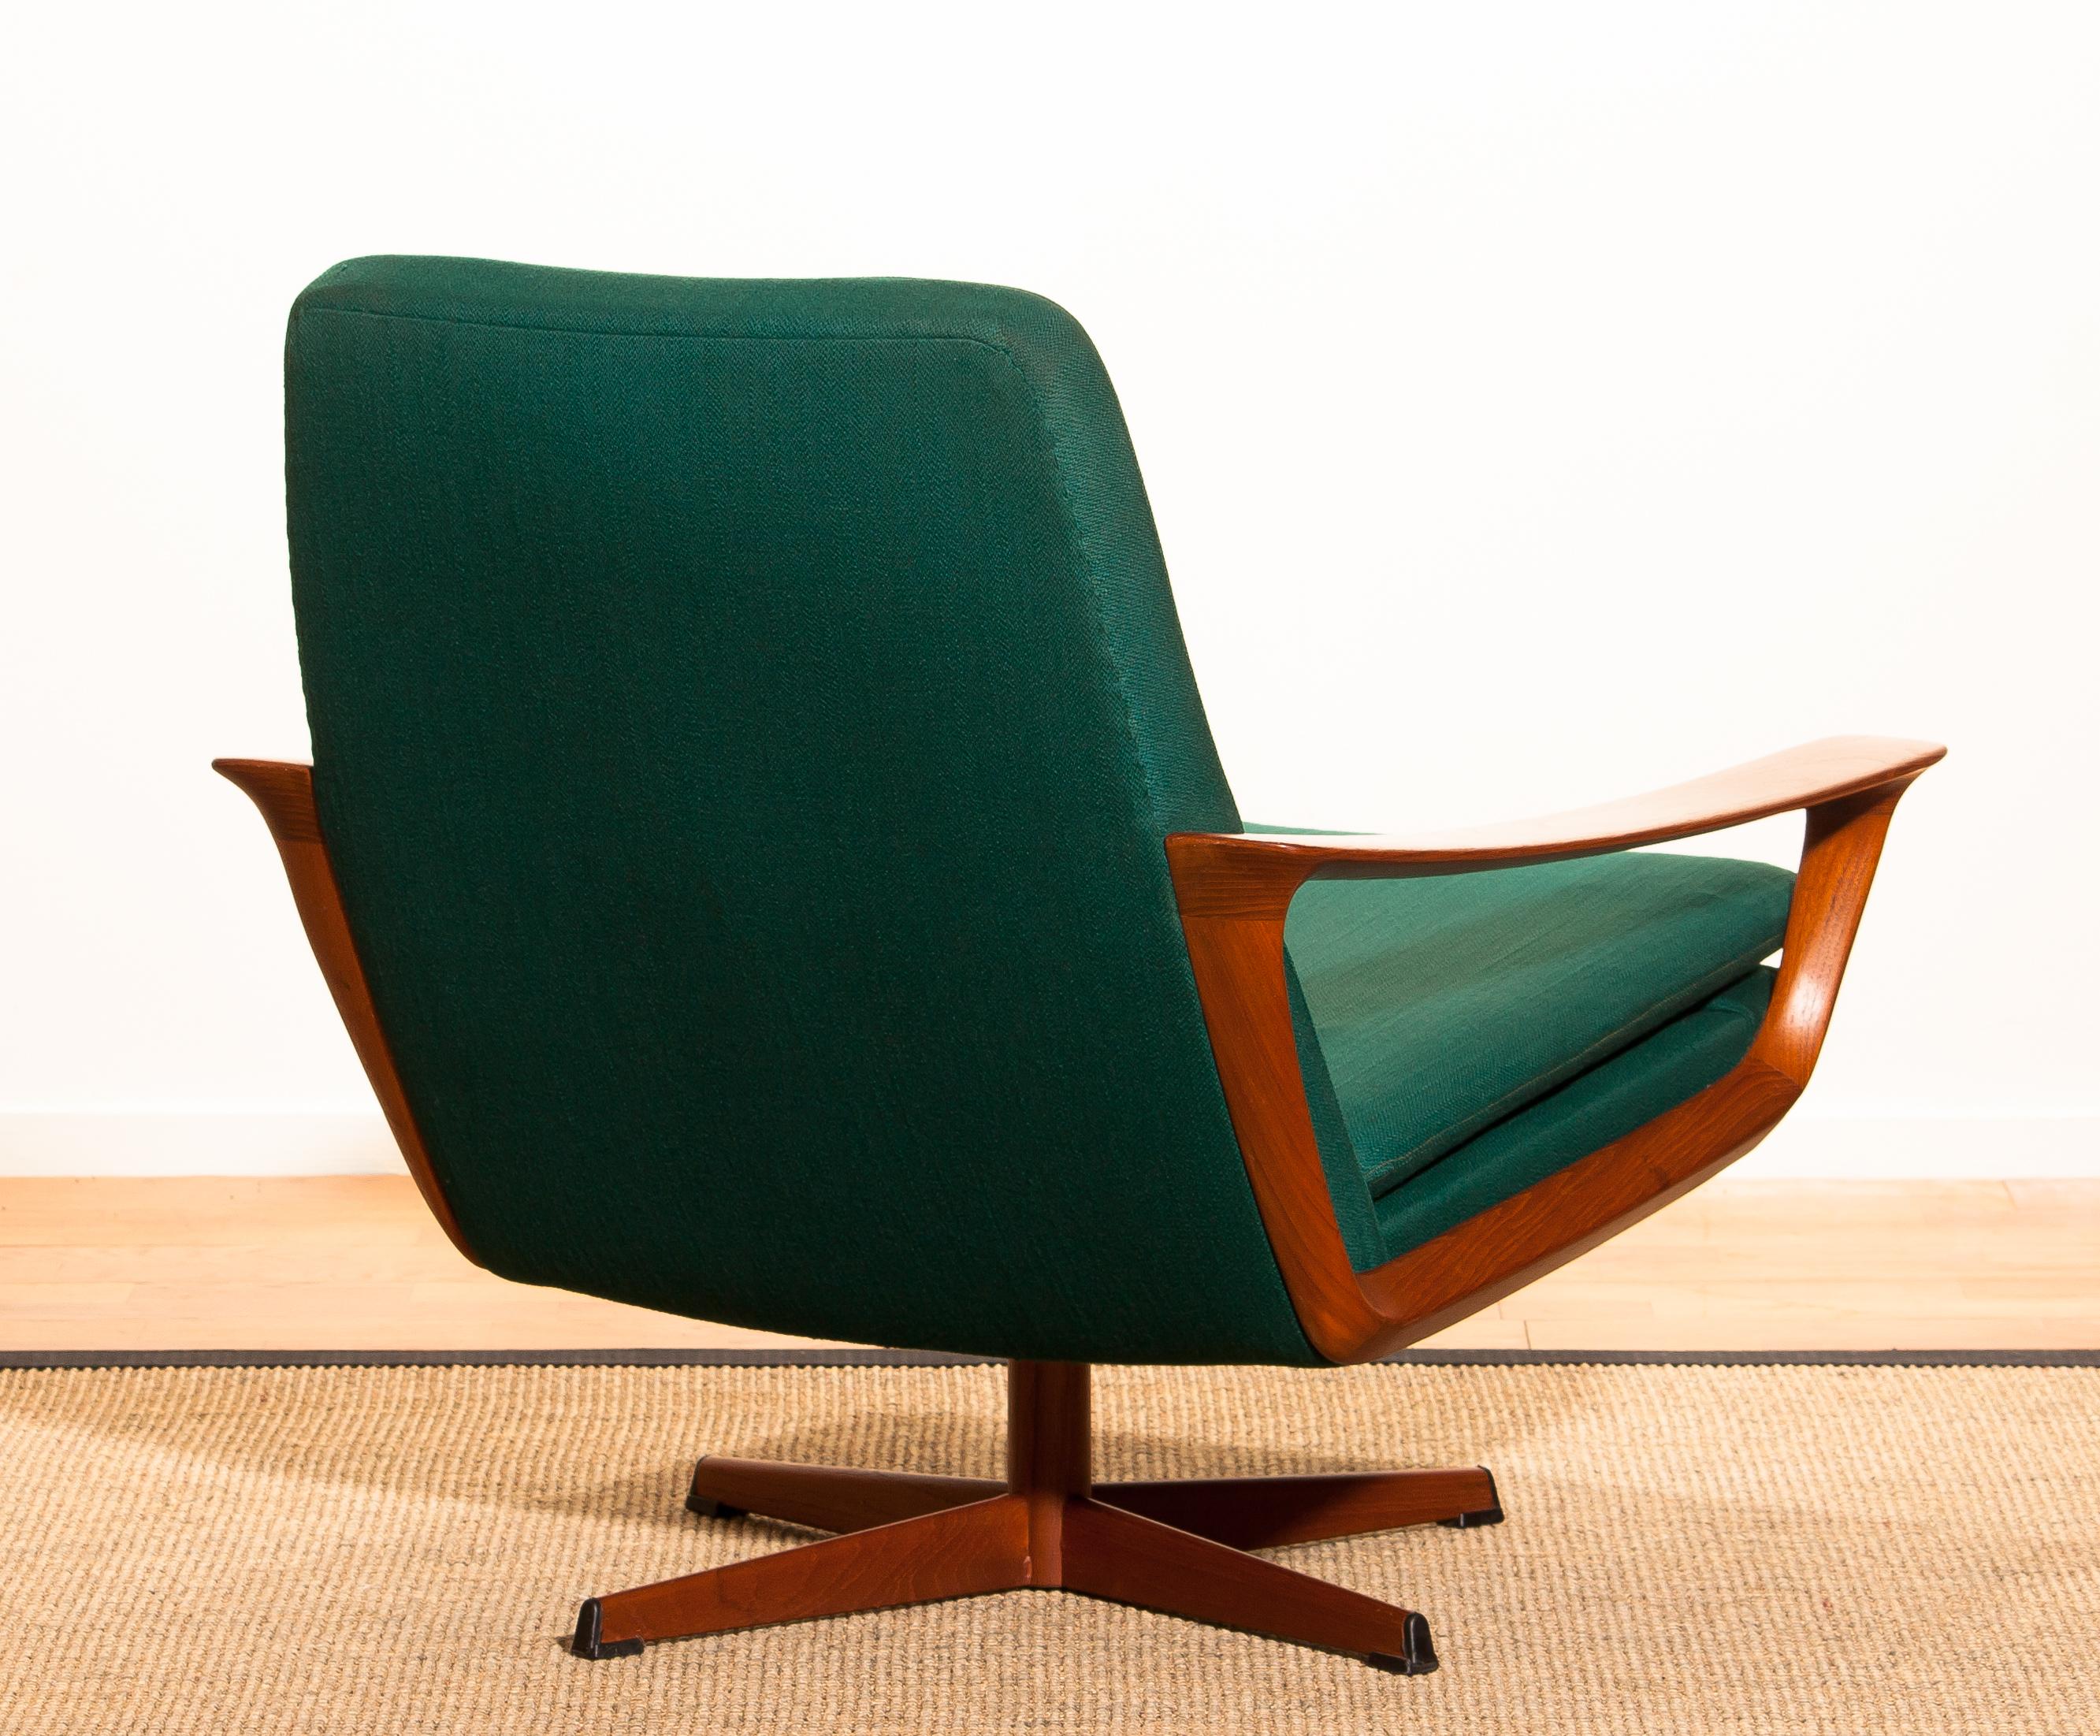 Danish 1960s, Teak Swivel Chair by Johannes Andersen for Trensum Denmark